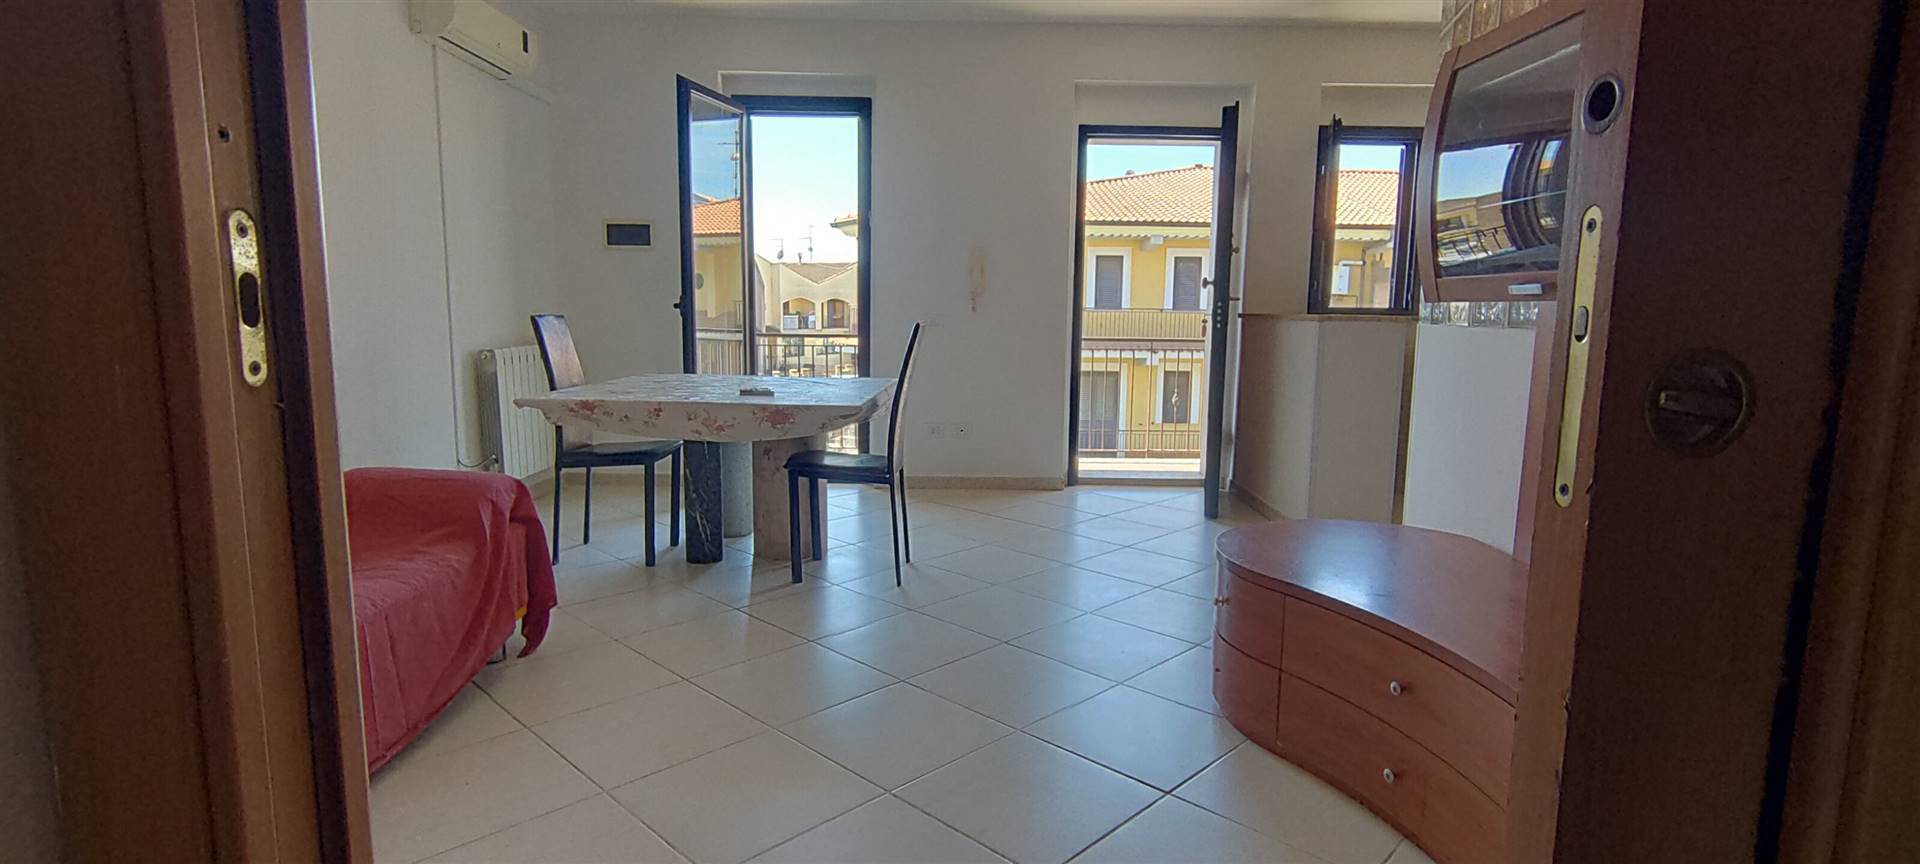 Appartamento in vendita a Tarano, 4 locali, zona cche di San Polo (Borgonuovo), prezzo € 75.000 | PortaleAgenzieImmobiliari.it